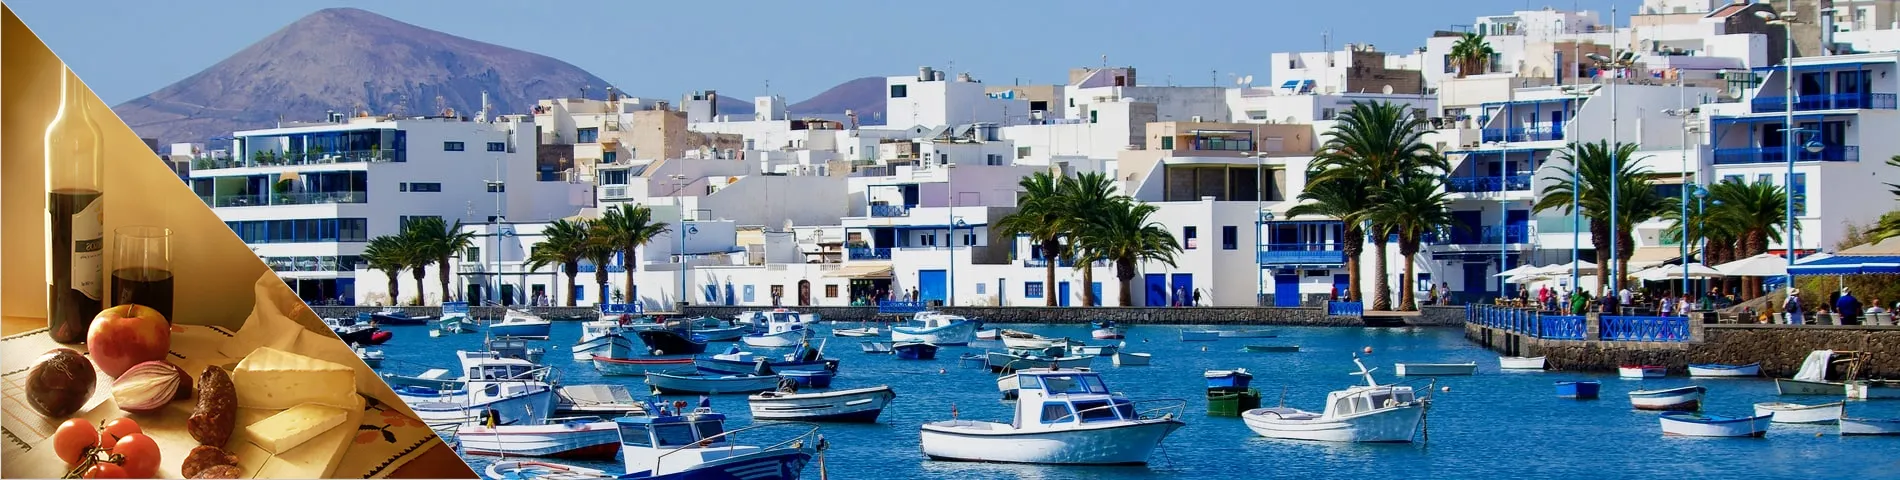 Lanzarote - Espanyol i Cultura